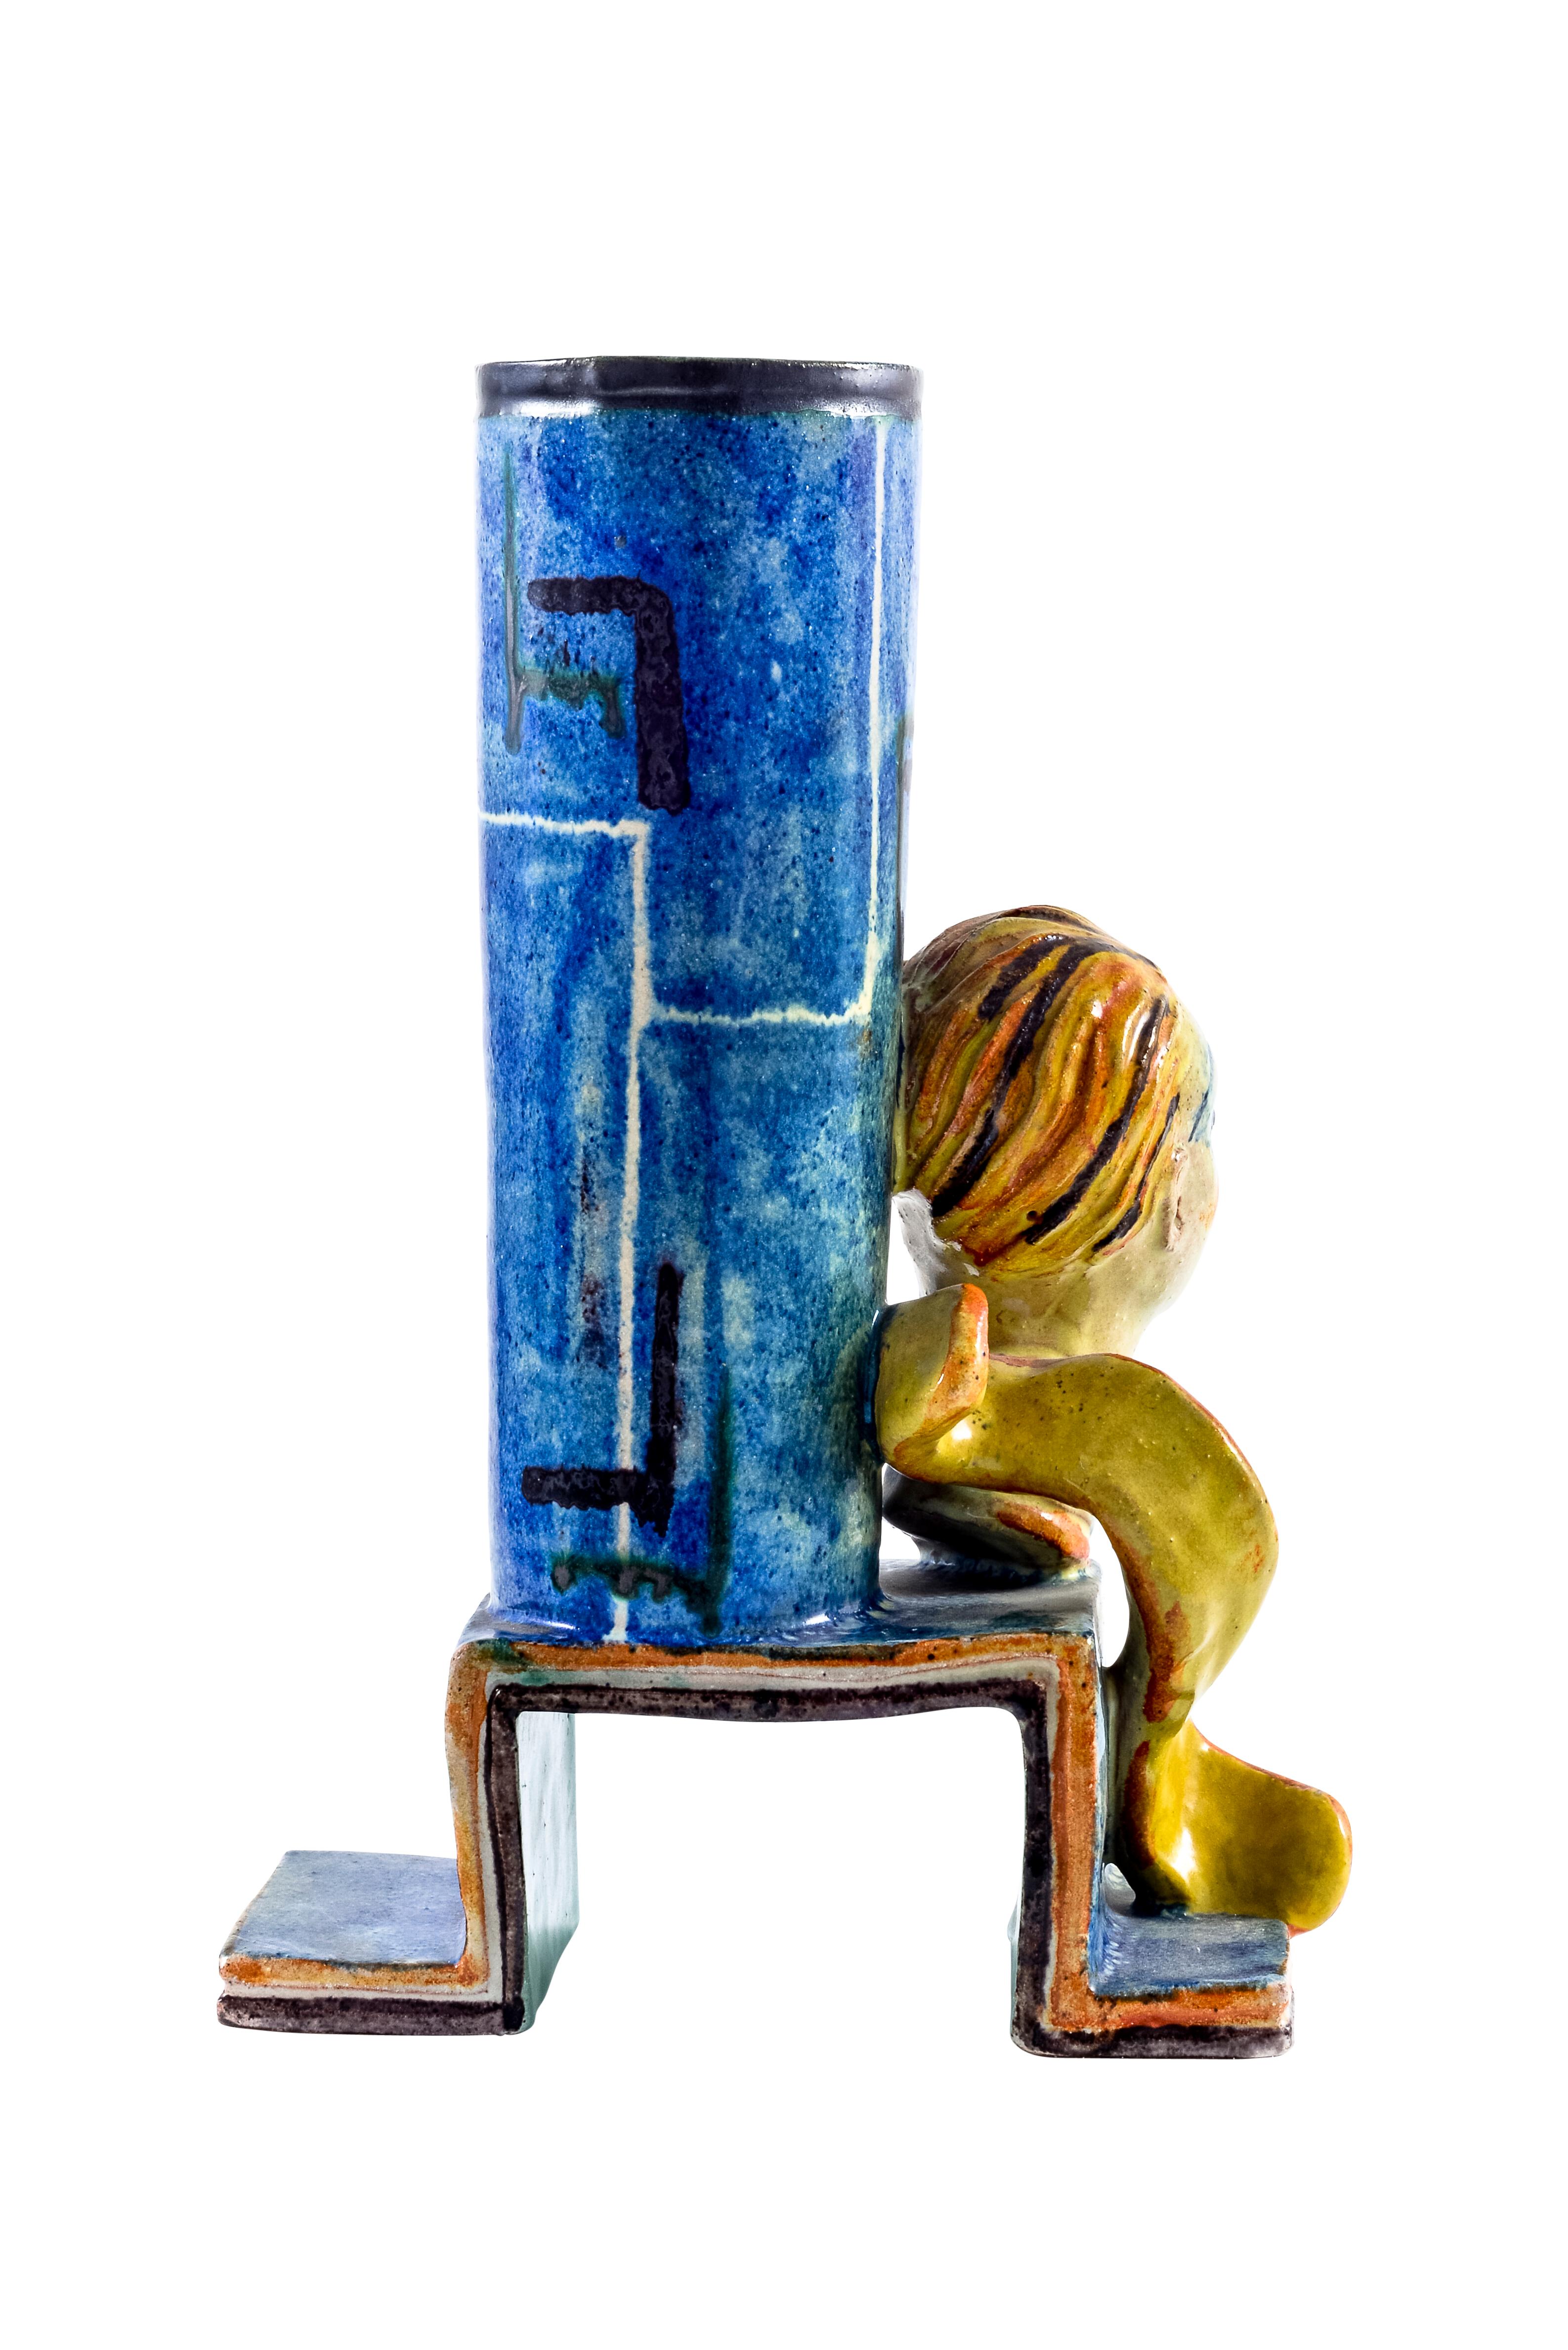 Glazed Ceramic Lamp Stand Gudrun Baudisch Wiener Werkstatte circa 1928 Austrian Art For Sale